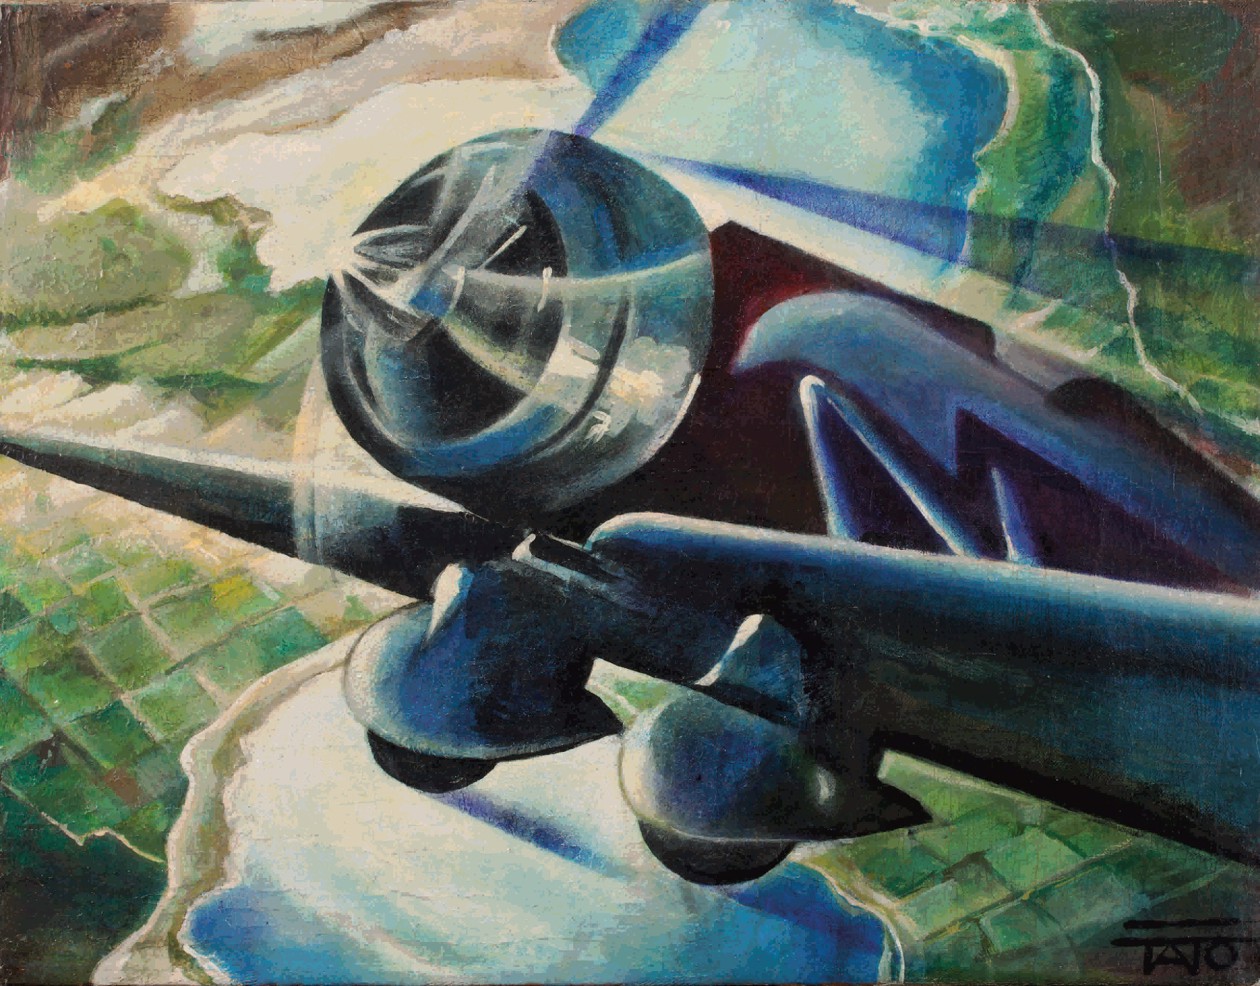 Guglielmo Sansoni (Tato), Canta motore va, olio su tela su masonite, 1934, Collezione privata.